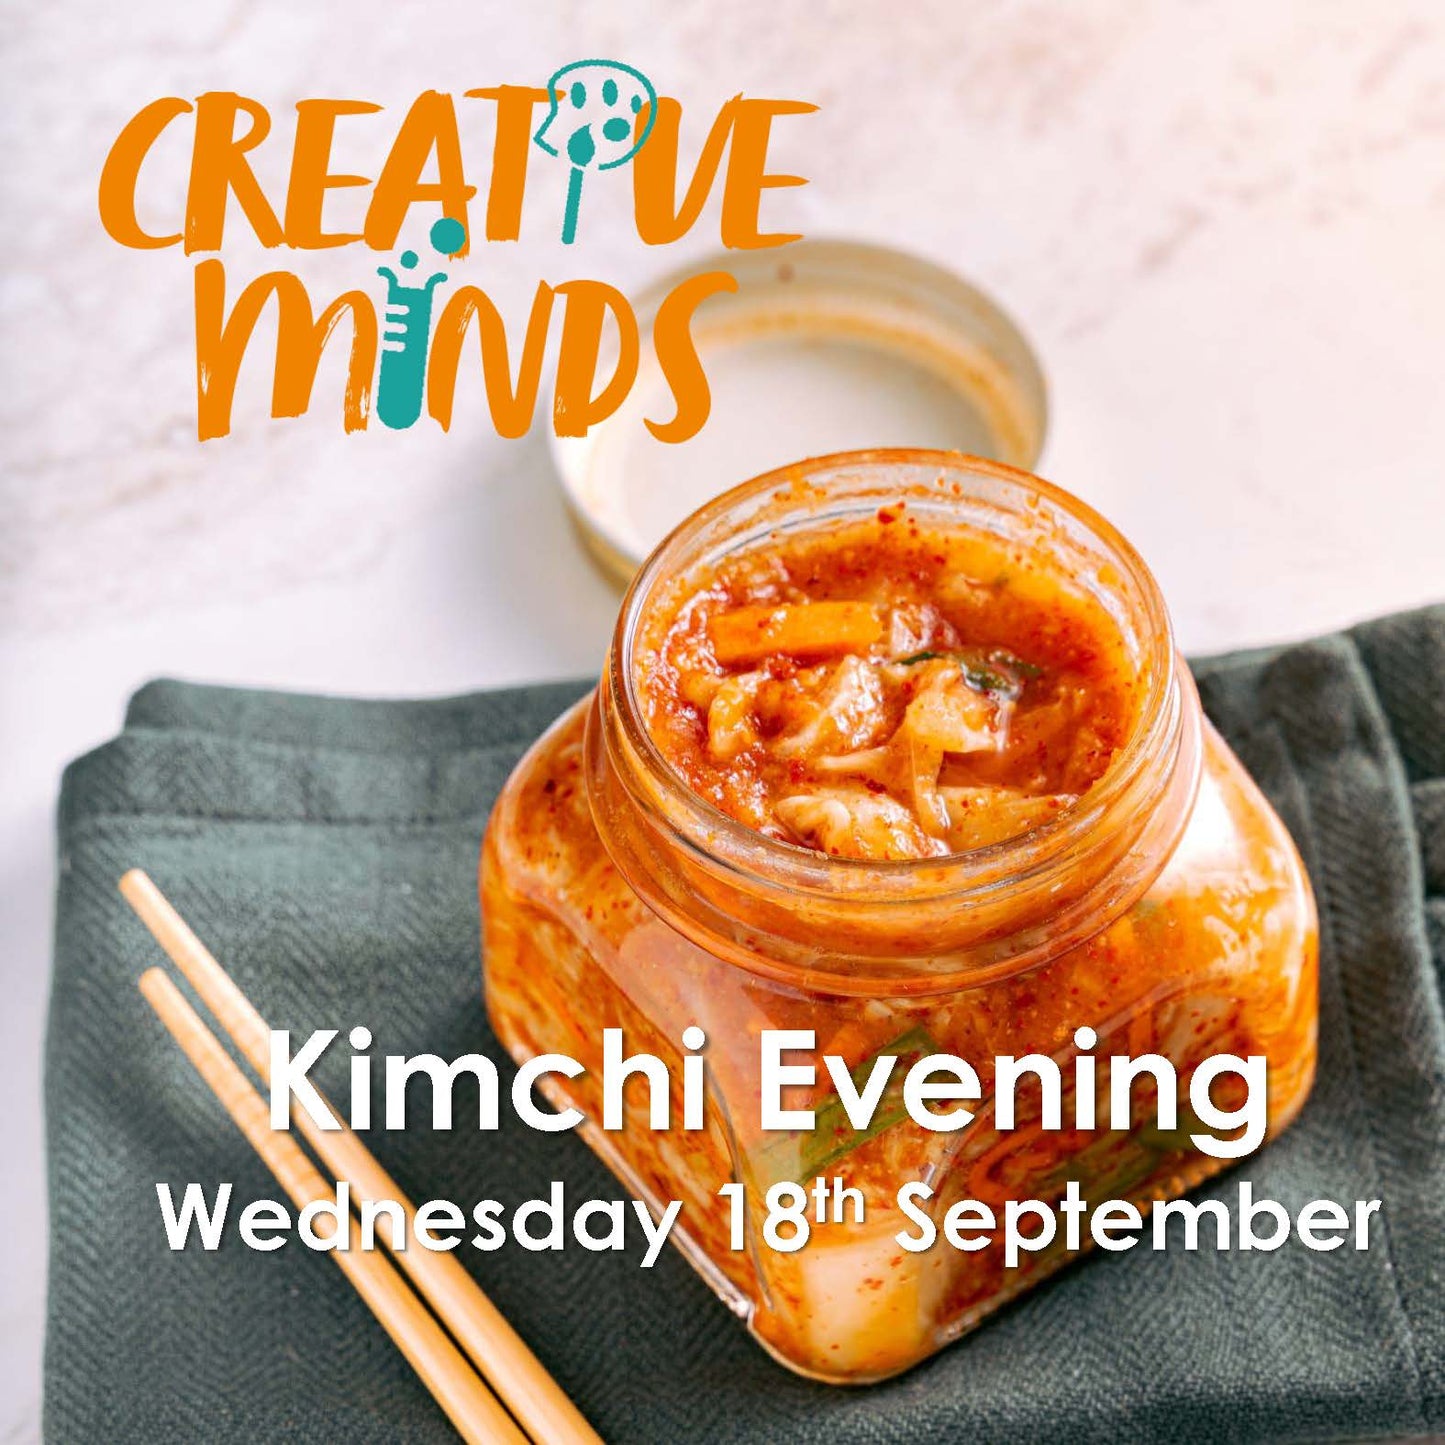 Kimchi Evening